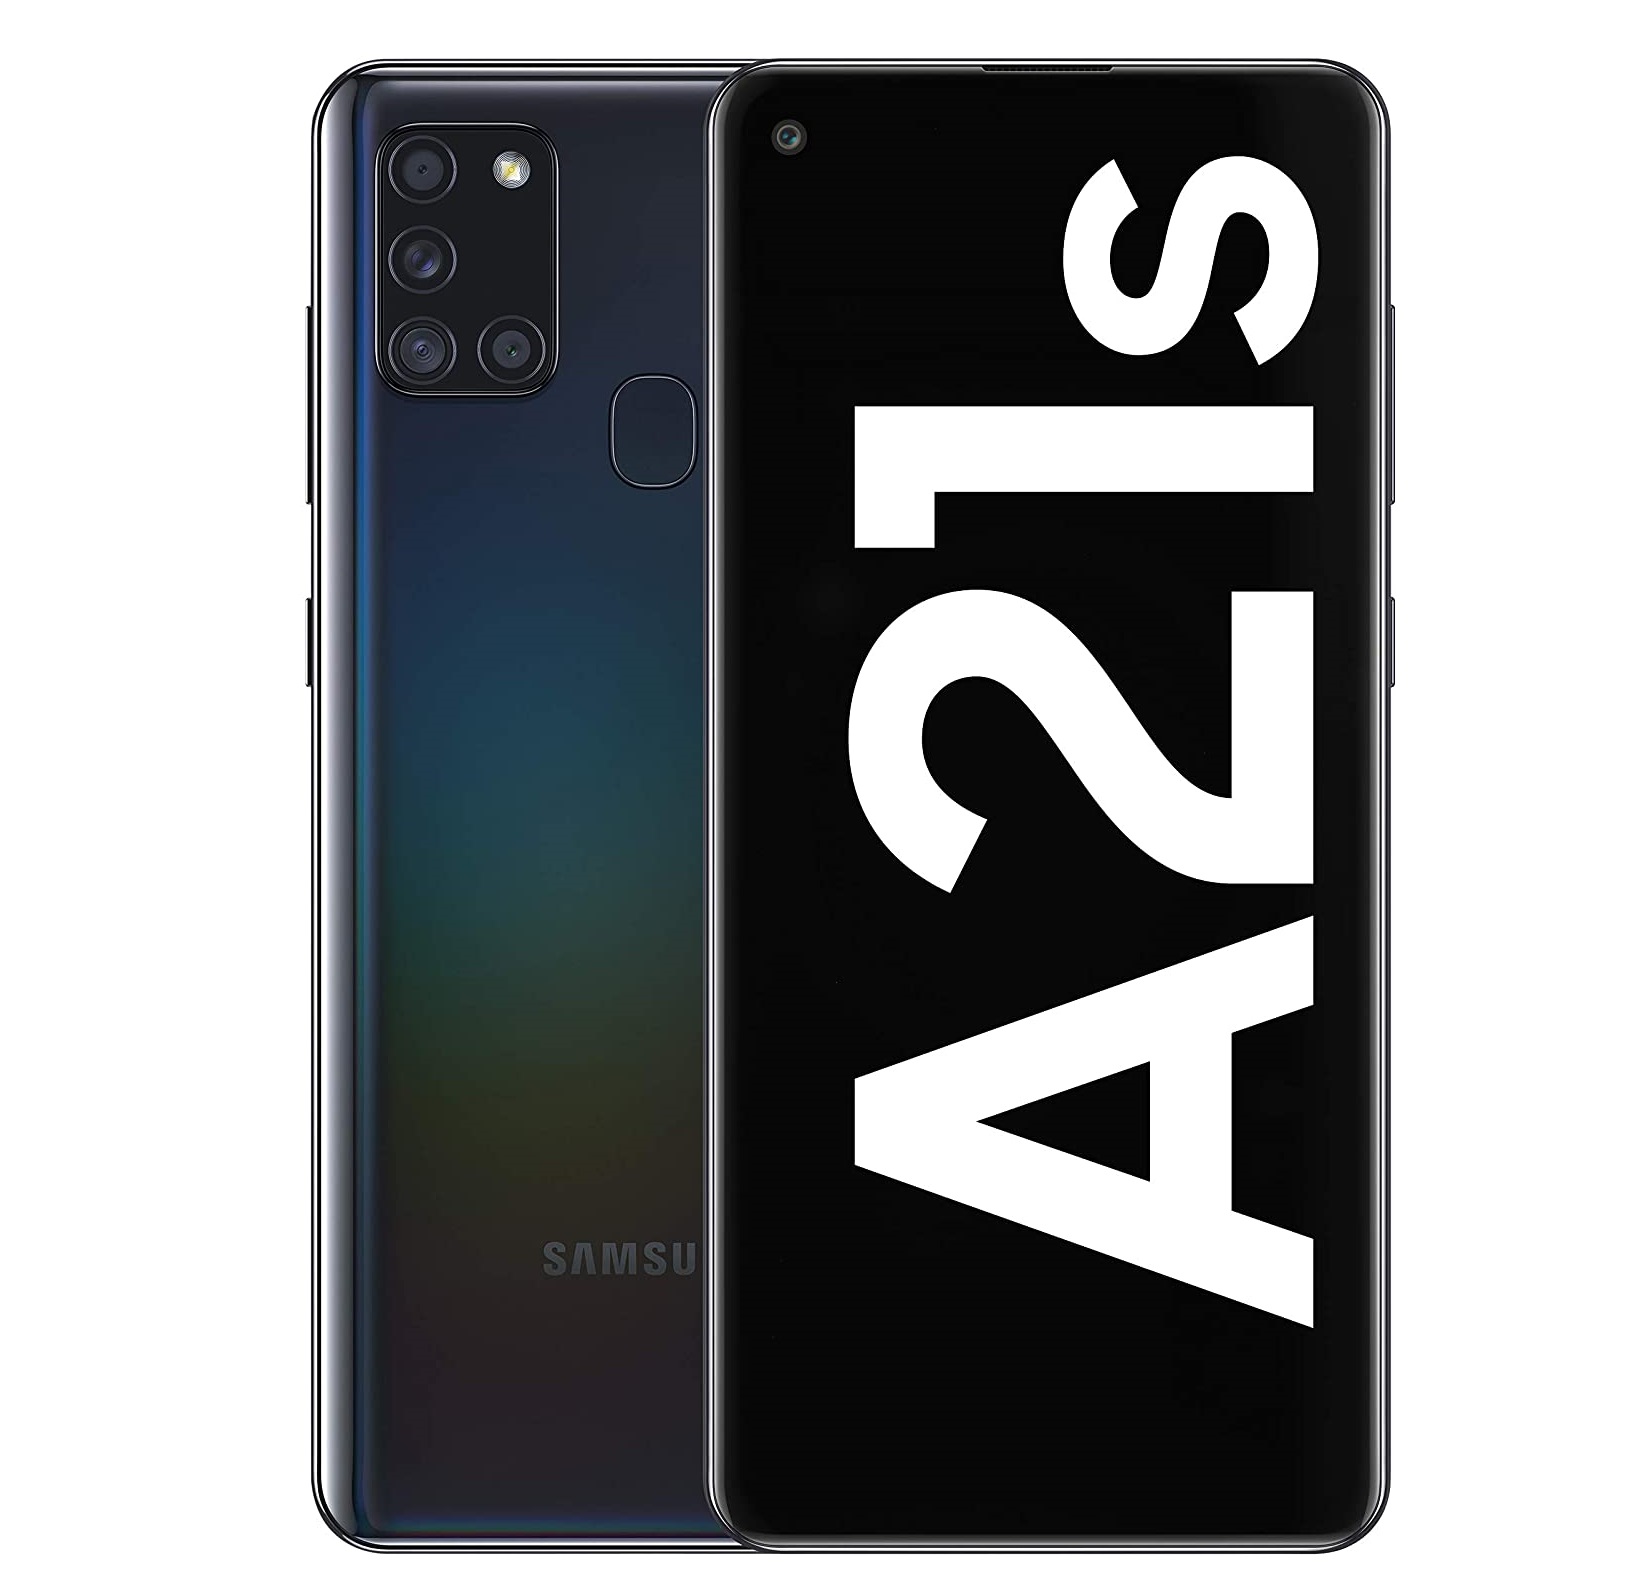 Críticas Críticas Samsung Galaxy A21s, ¿vale la pena? [2021]